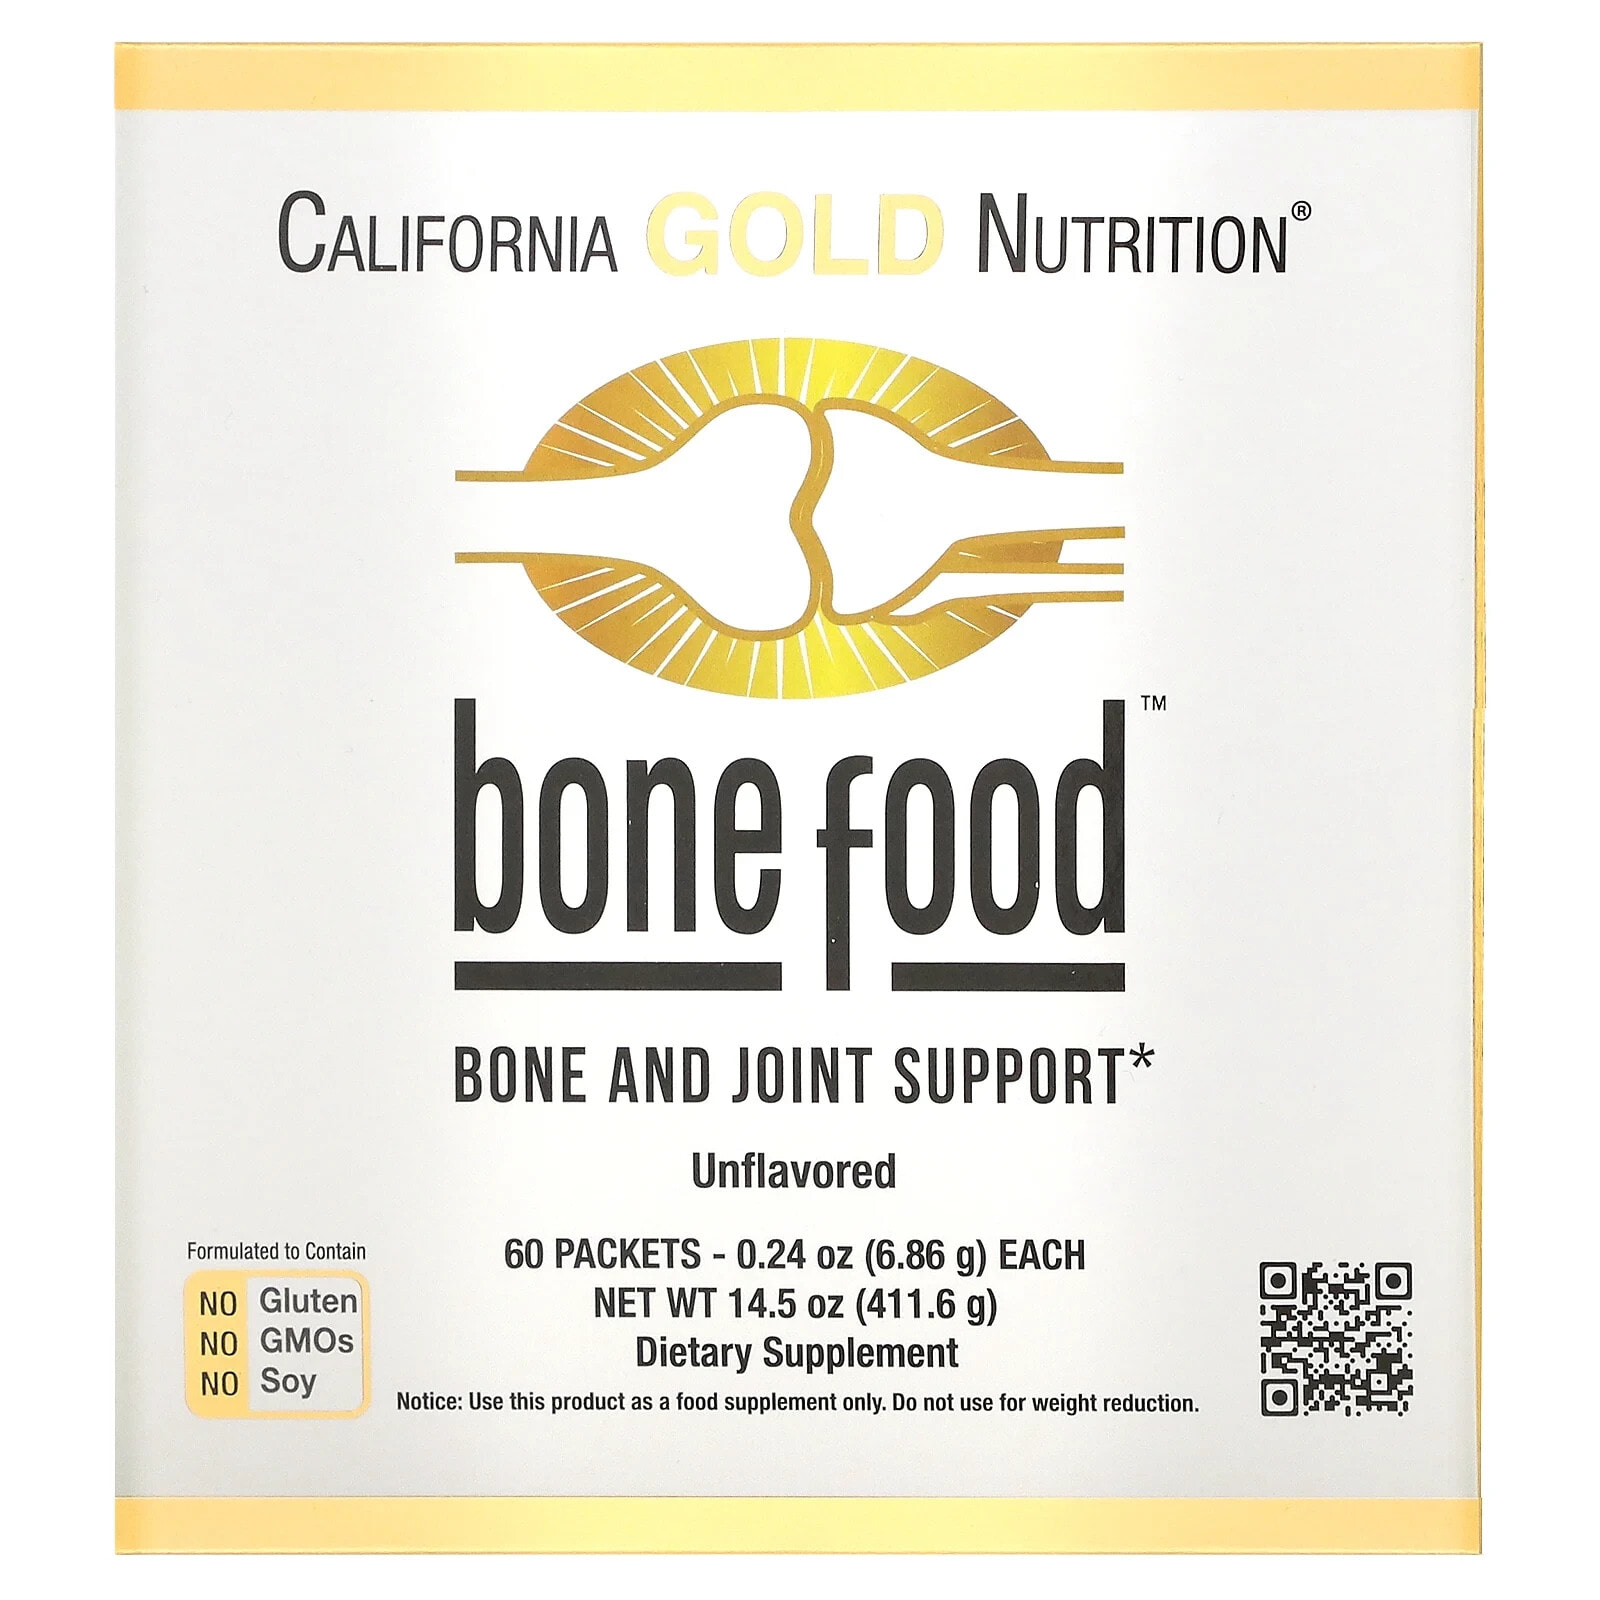 California Gold Nutrition, Bone Food, добавка для поддержки здоровья костей и суставов, 411 г (14,50 унции)